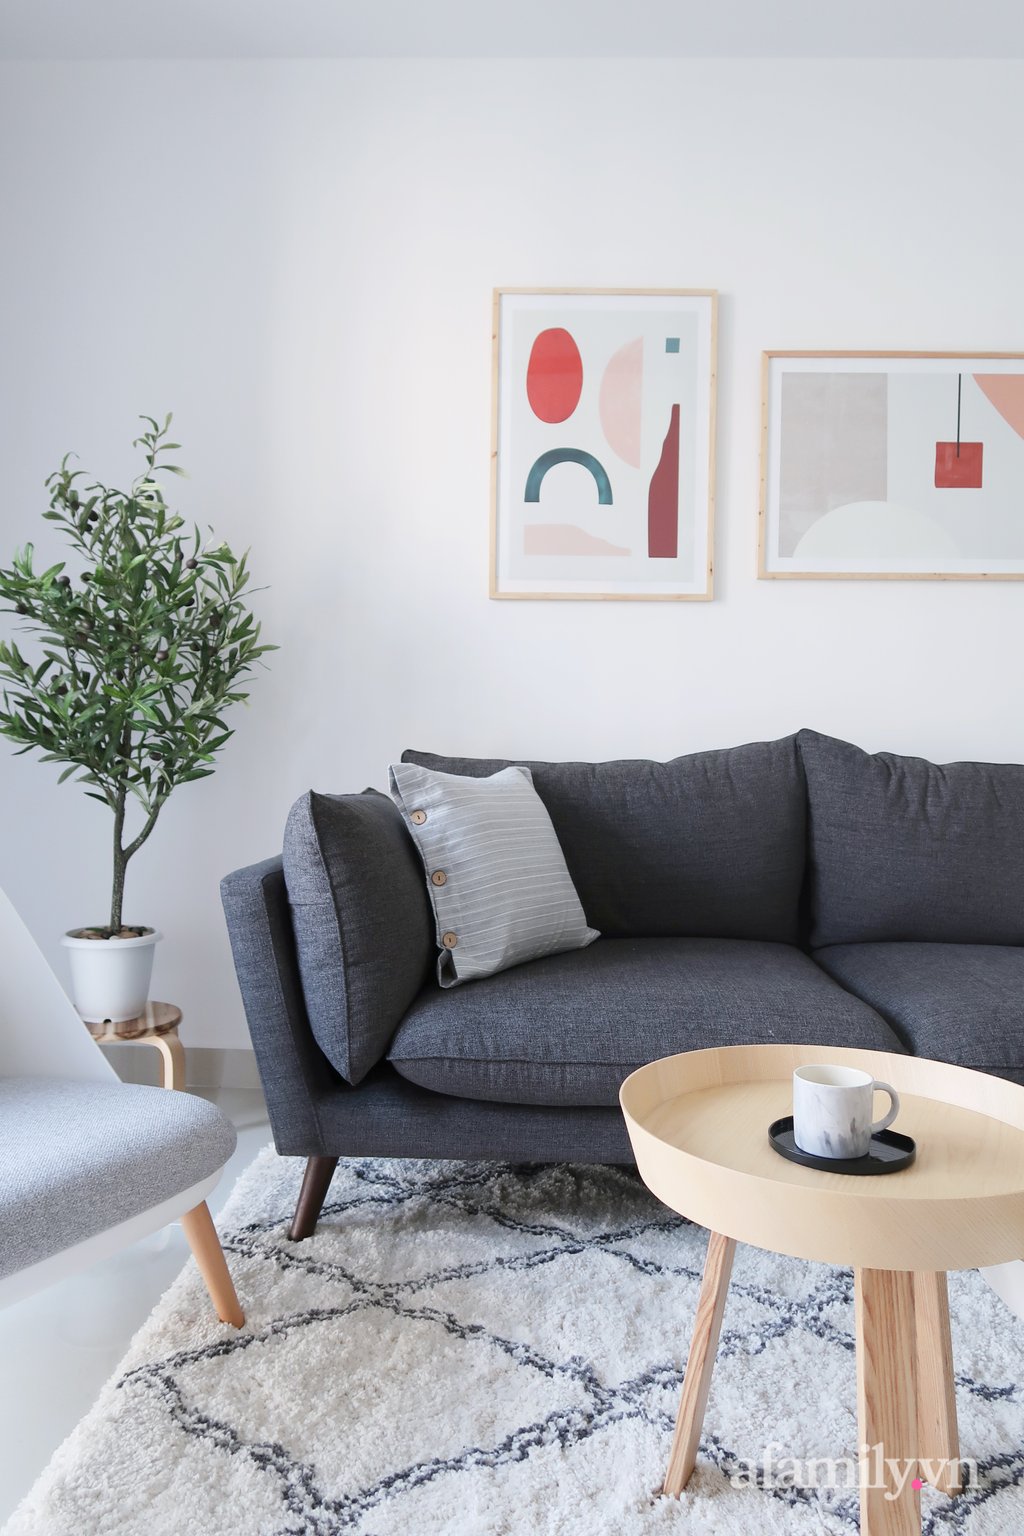 Mẫu ghế sofa sử dụng là thiết kế cơ bản, đề cao sự thoải mái và êm ái cho người dùng.